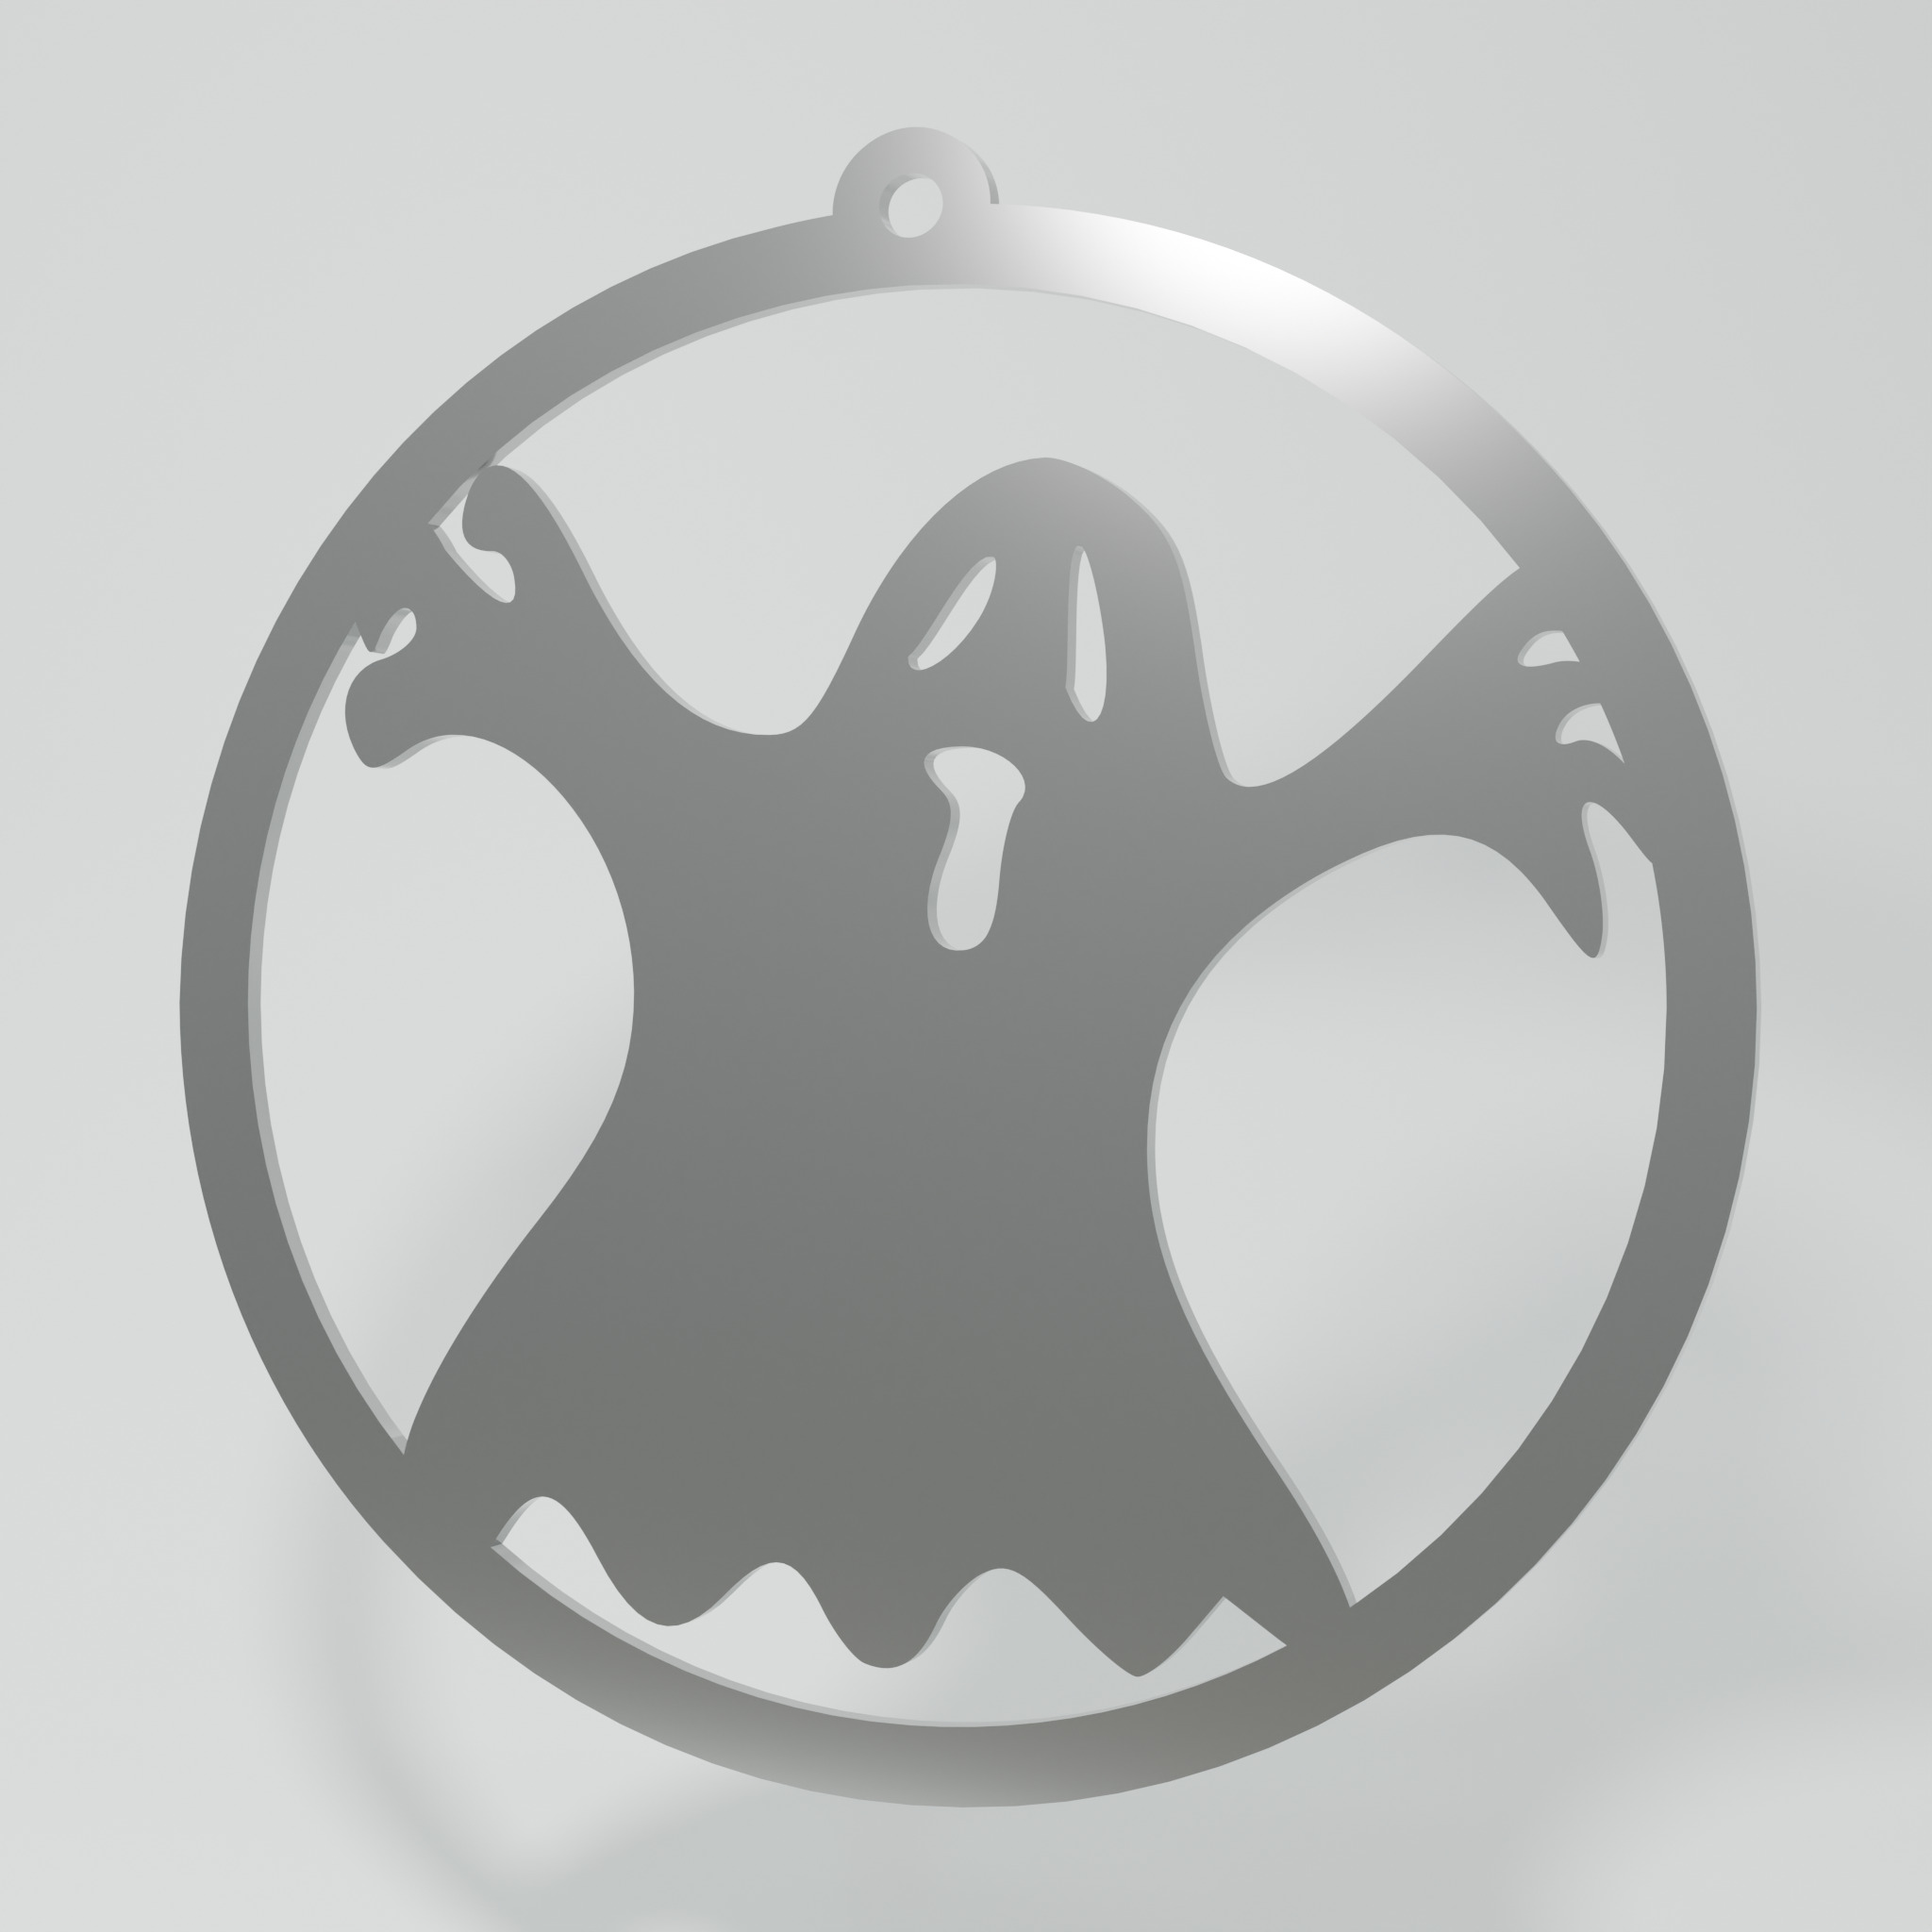 Décoration métallique - Halloween : Fantôme